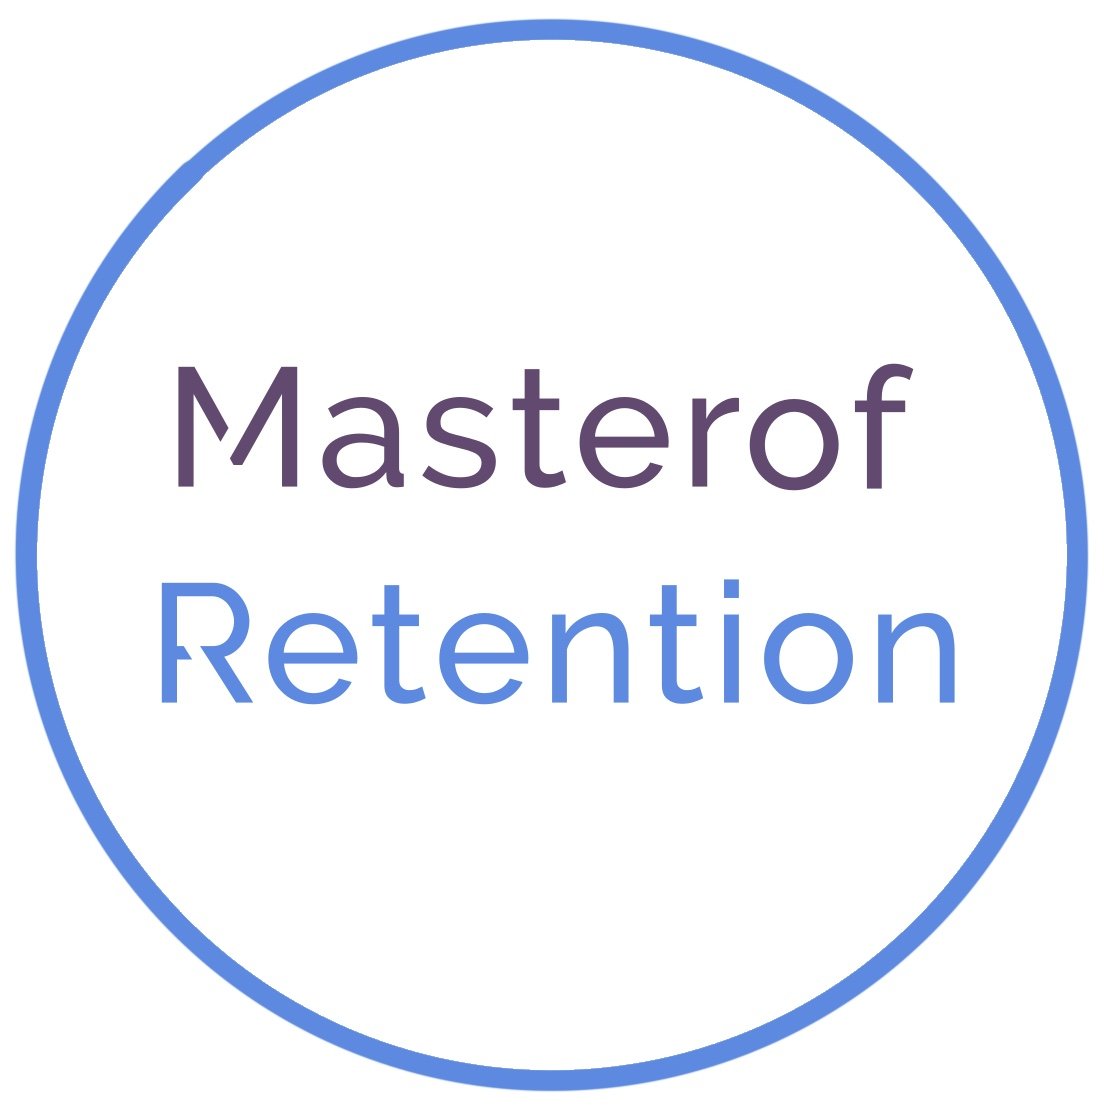 Masterof Retention